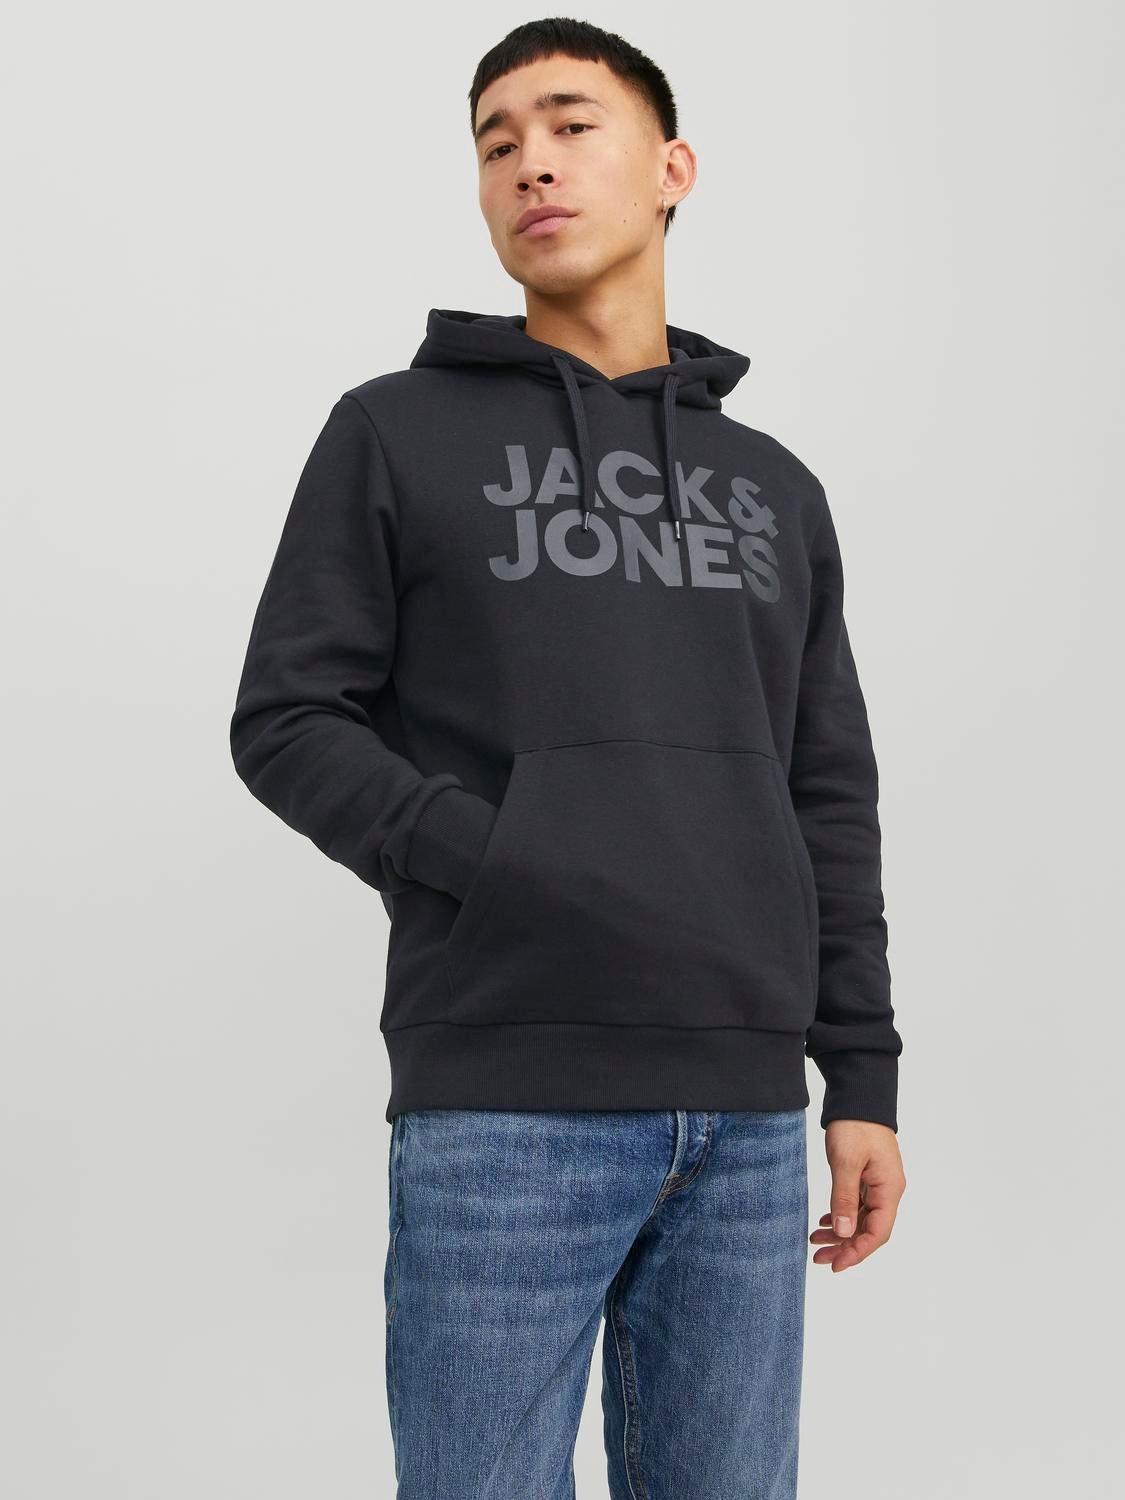 Jack & Jones Logo Kapuutsiga pusa -Black - 12152840